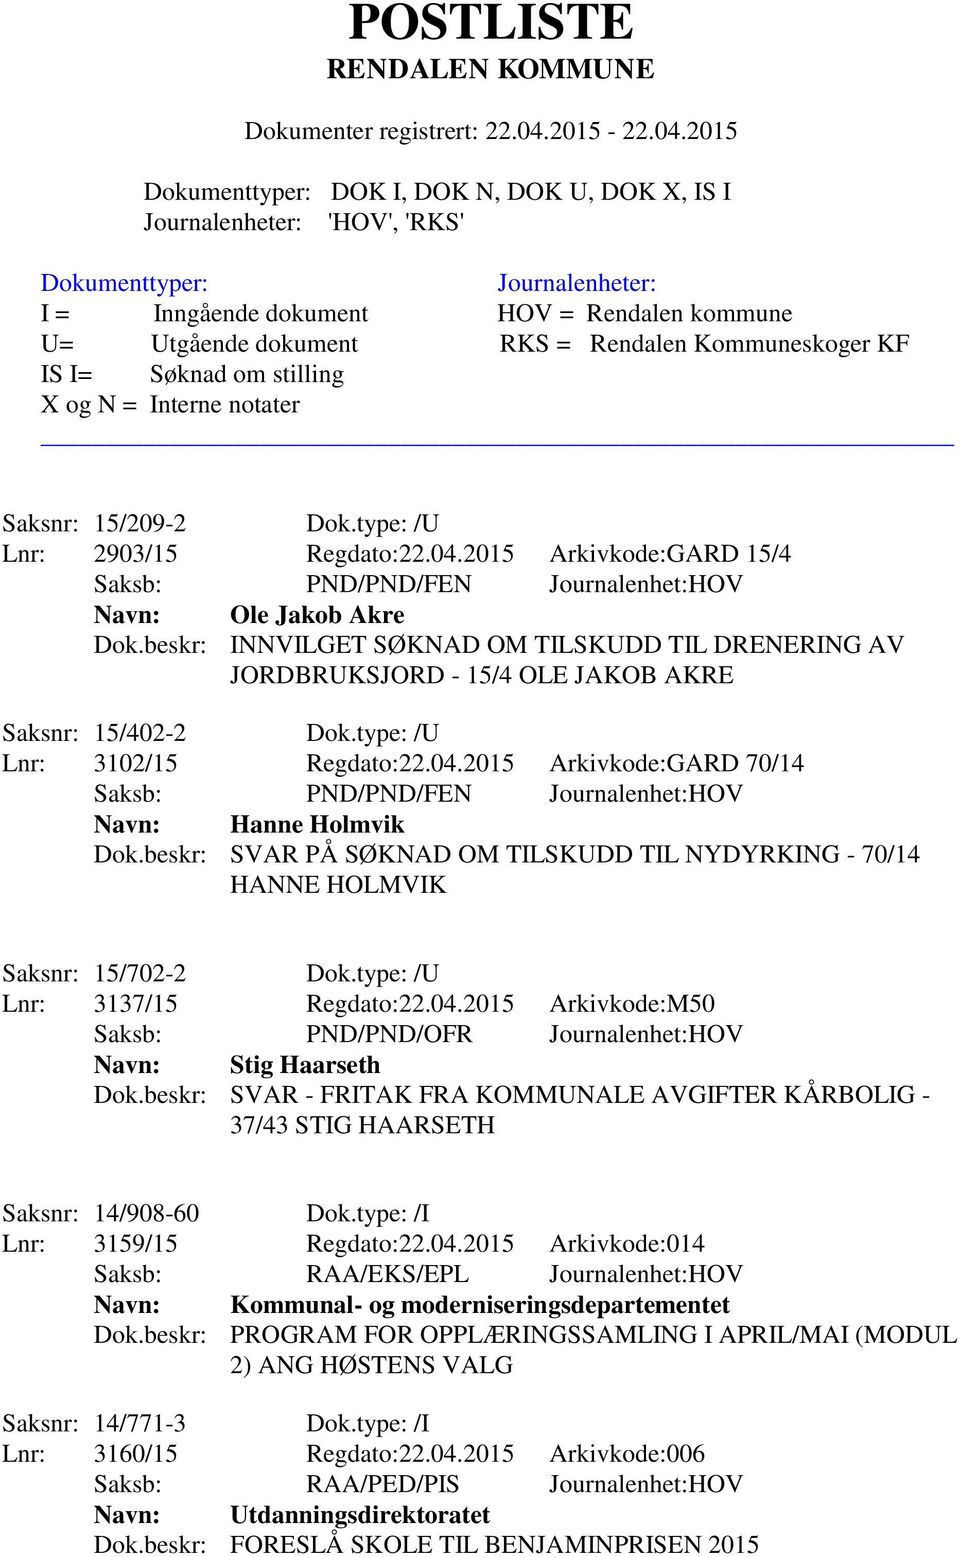 2015 Arkivkode:GARD 70/14 Saksb: PND/PND/FEN Journalenhet:HOV Navn: Hanne Holmvik Dok.beskr: SVAR PÅ SØKNAD OM TILSKUDD TIL NYDYRKING - 70/14 HANNE HOLMVIK Saksnr: 15/702-2 Dok.